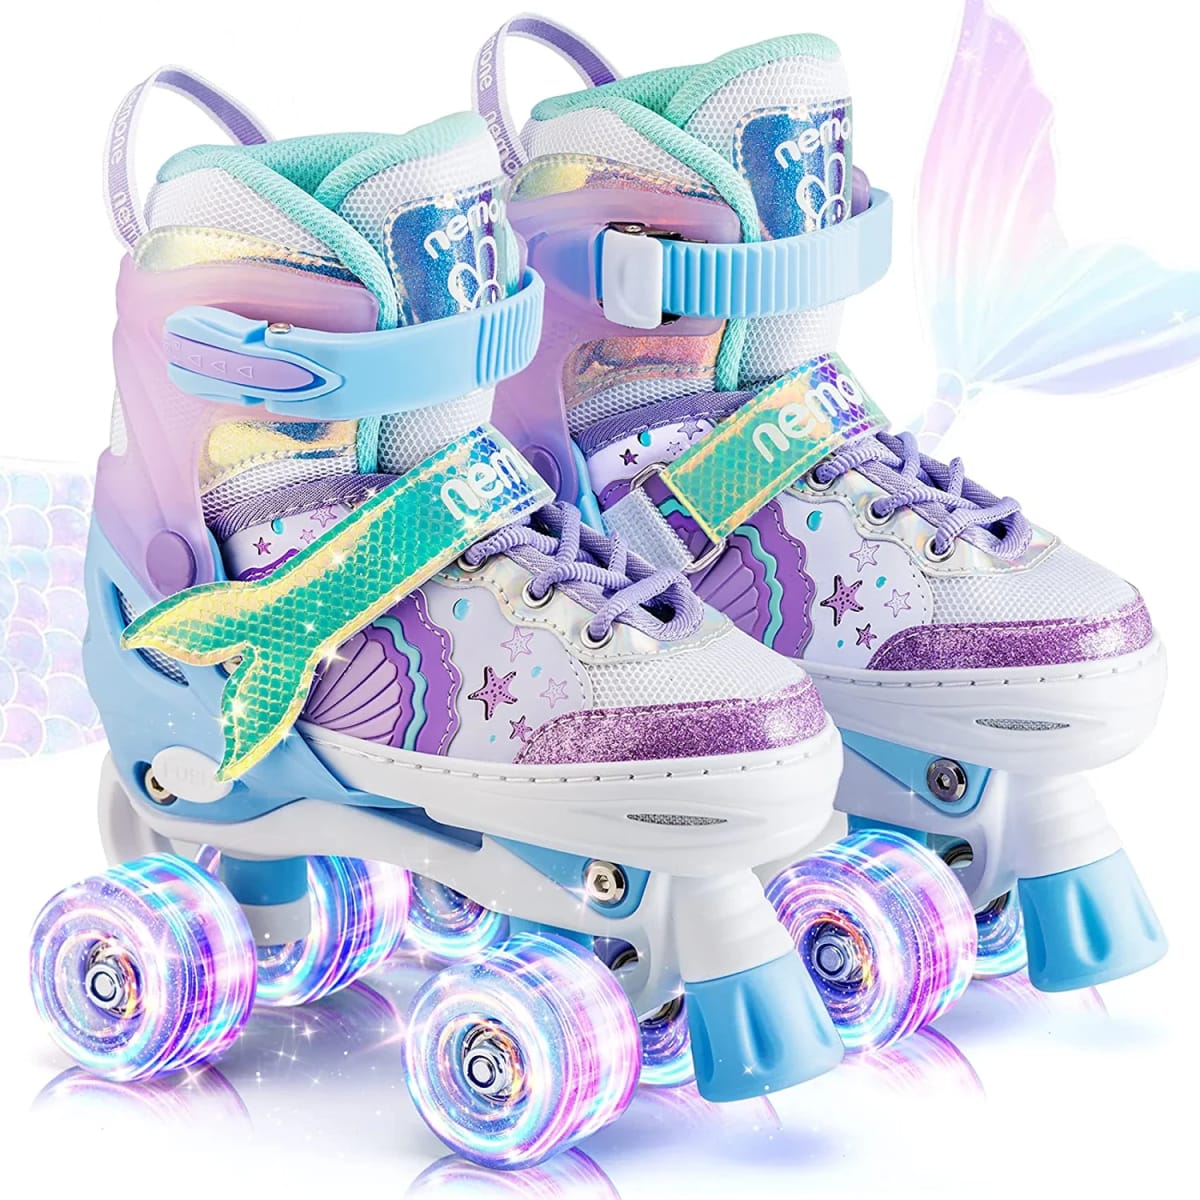 Light up Roller Skates for Girls